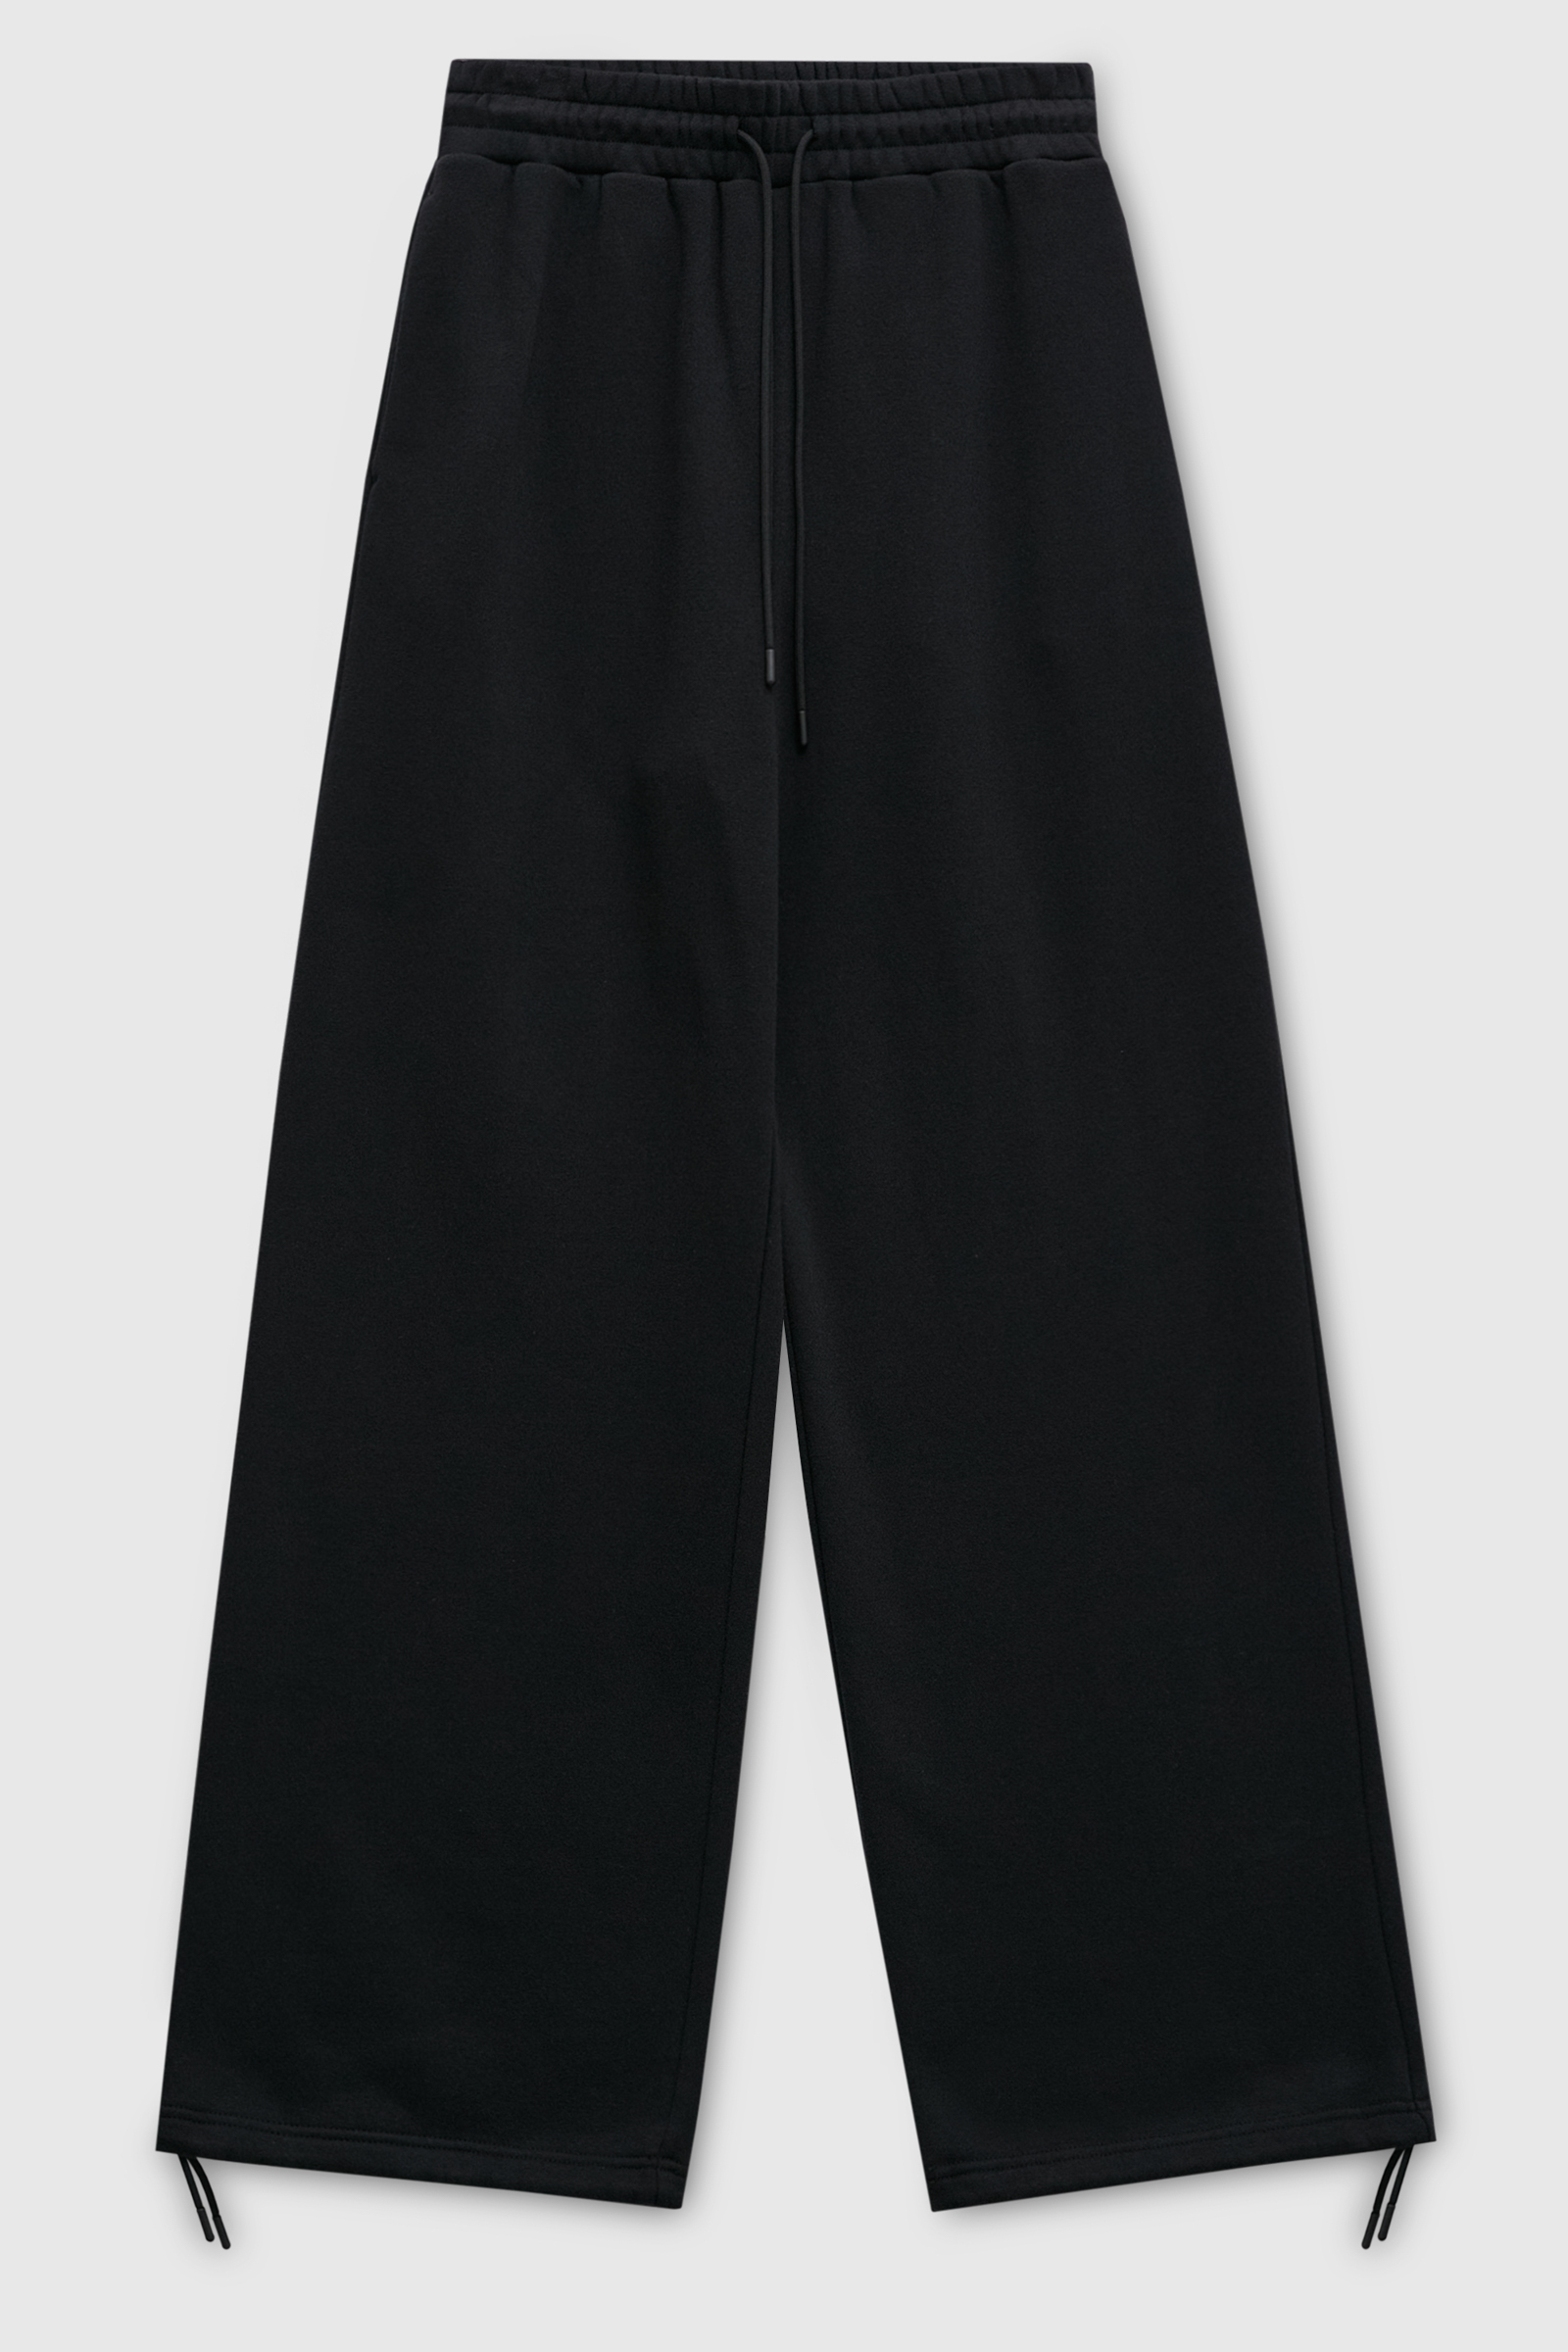 Спортивные брюки женские Finn Flare FAD110161 черные XL